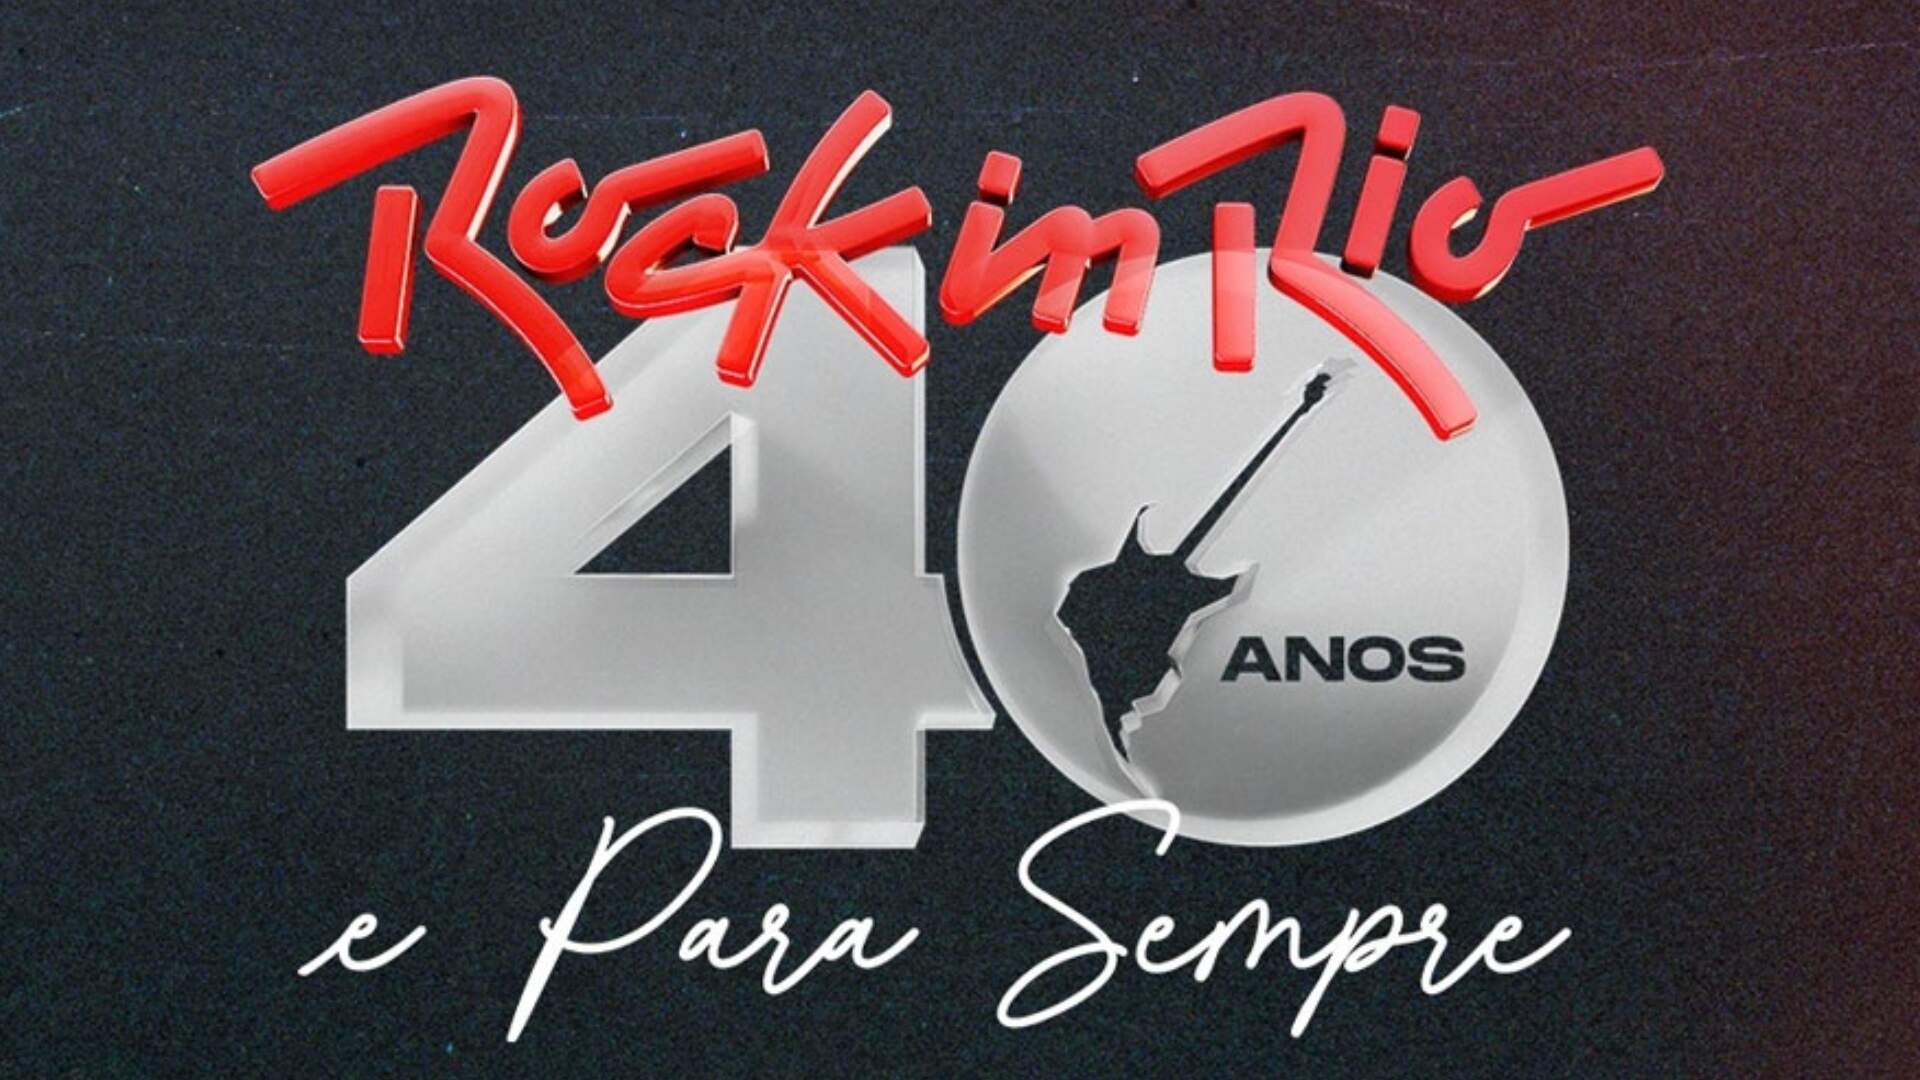 Deixa o Coração Falar: Música em homenagem aos 40 anos do Rock in Rio é lançada nas plataformas digitais - Metropolitana FM